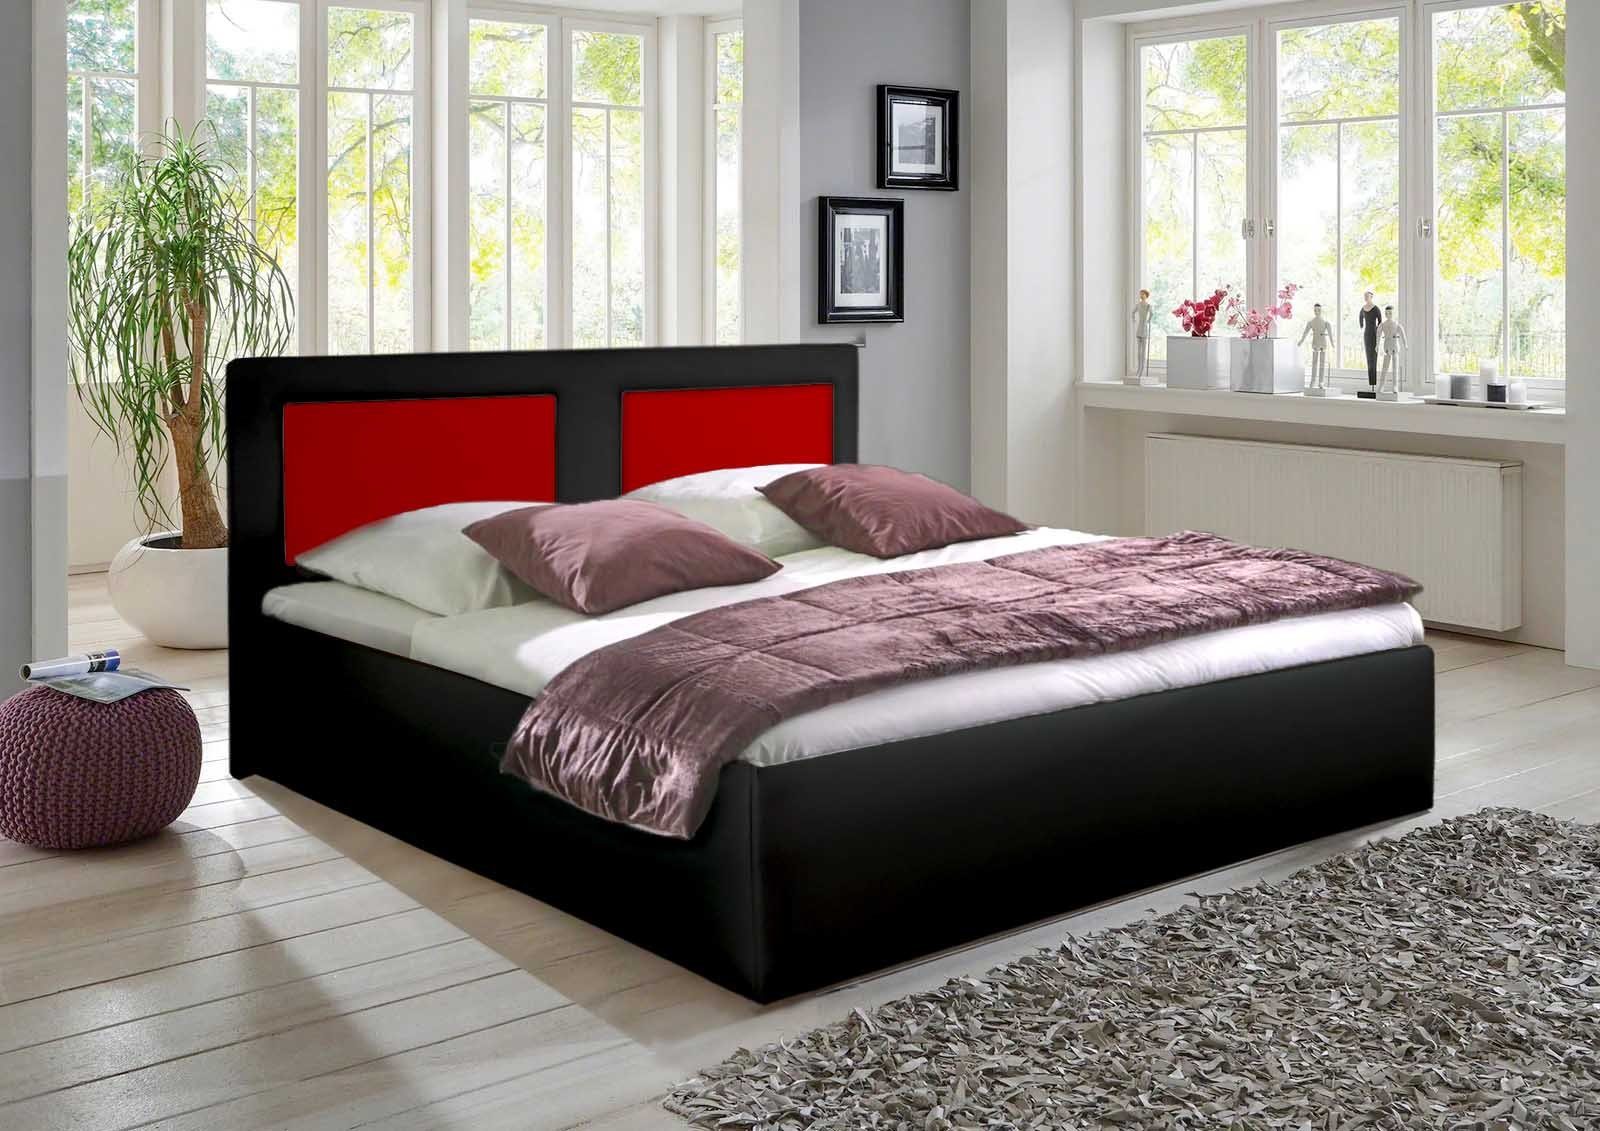 (Mittelstrebe) Skala, Mittelteil Schlafkomfort Schwarz-Rot Farbe Polsterbett Ohne 2 Halmon Betten kombination,